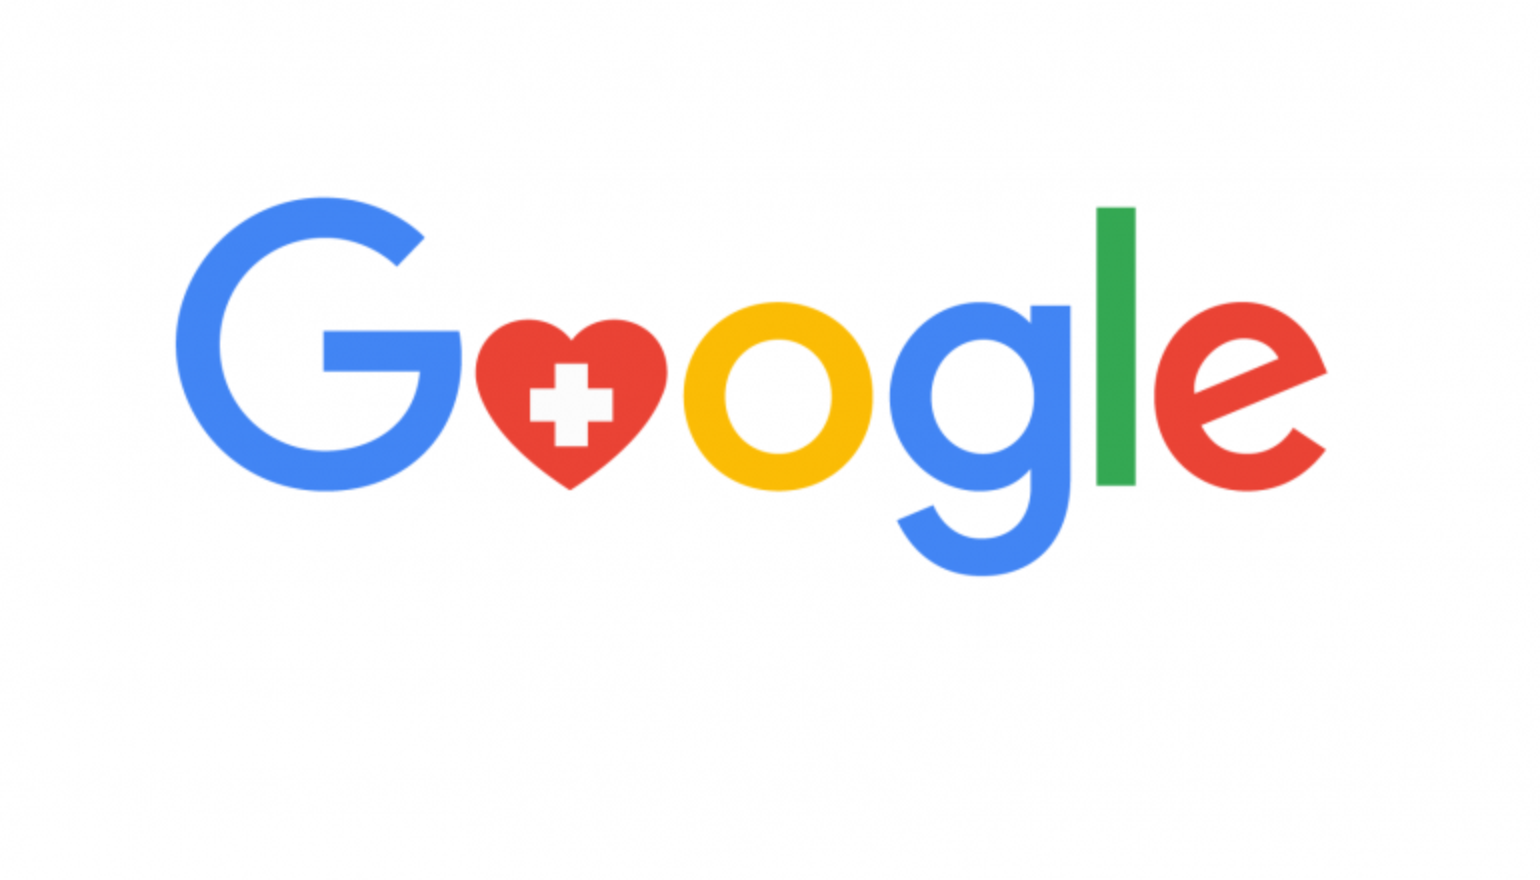 جوجل تود تخصيص نطاق بحث للأطباء والمرضى لمتابعة السجل الطبي